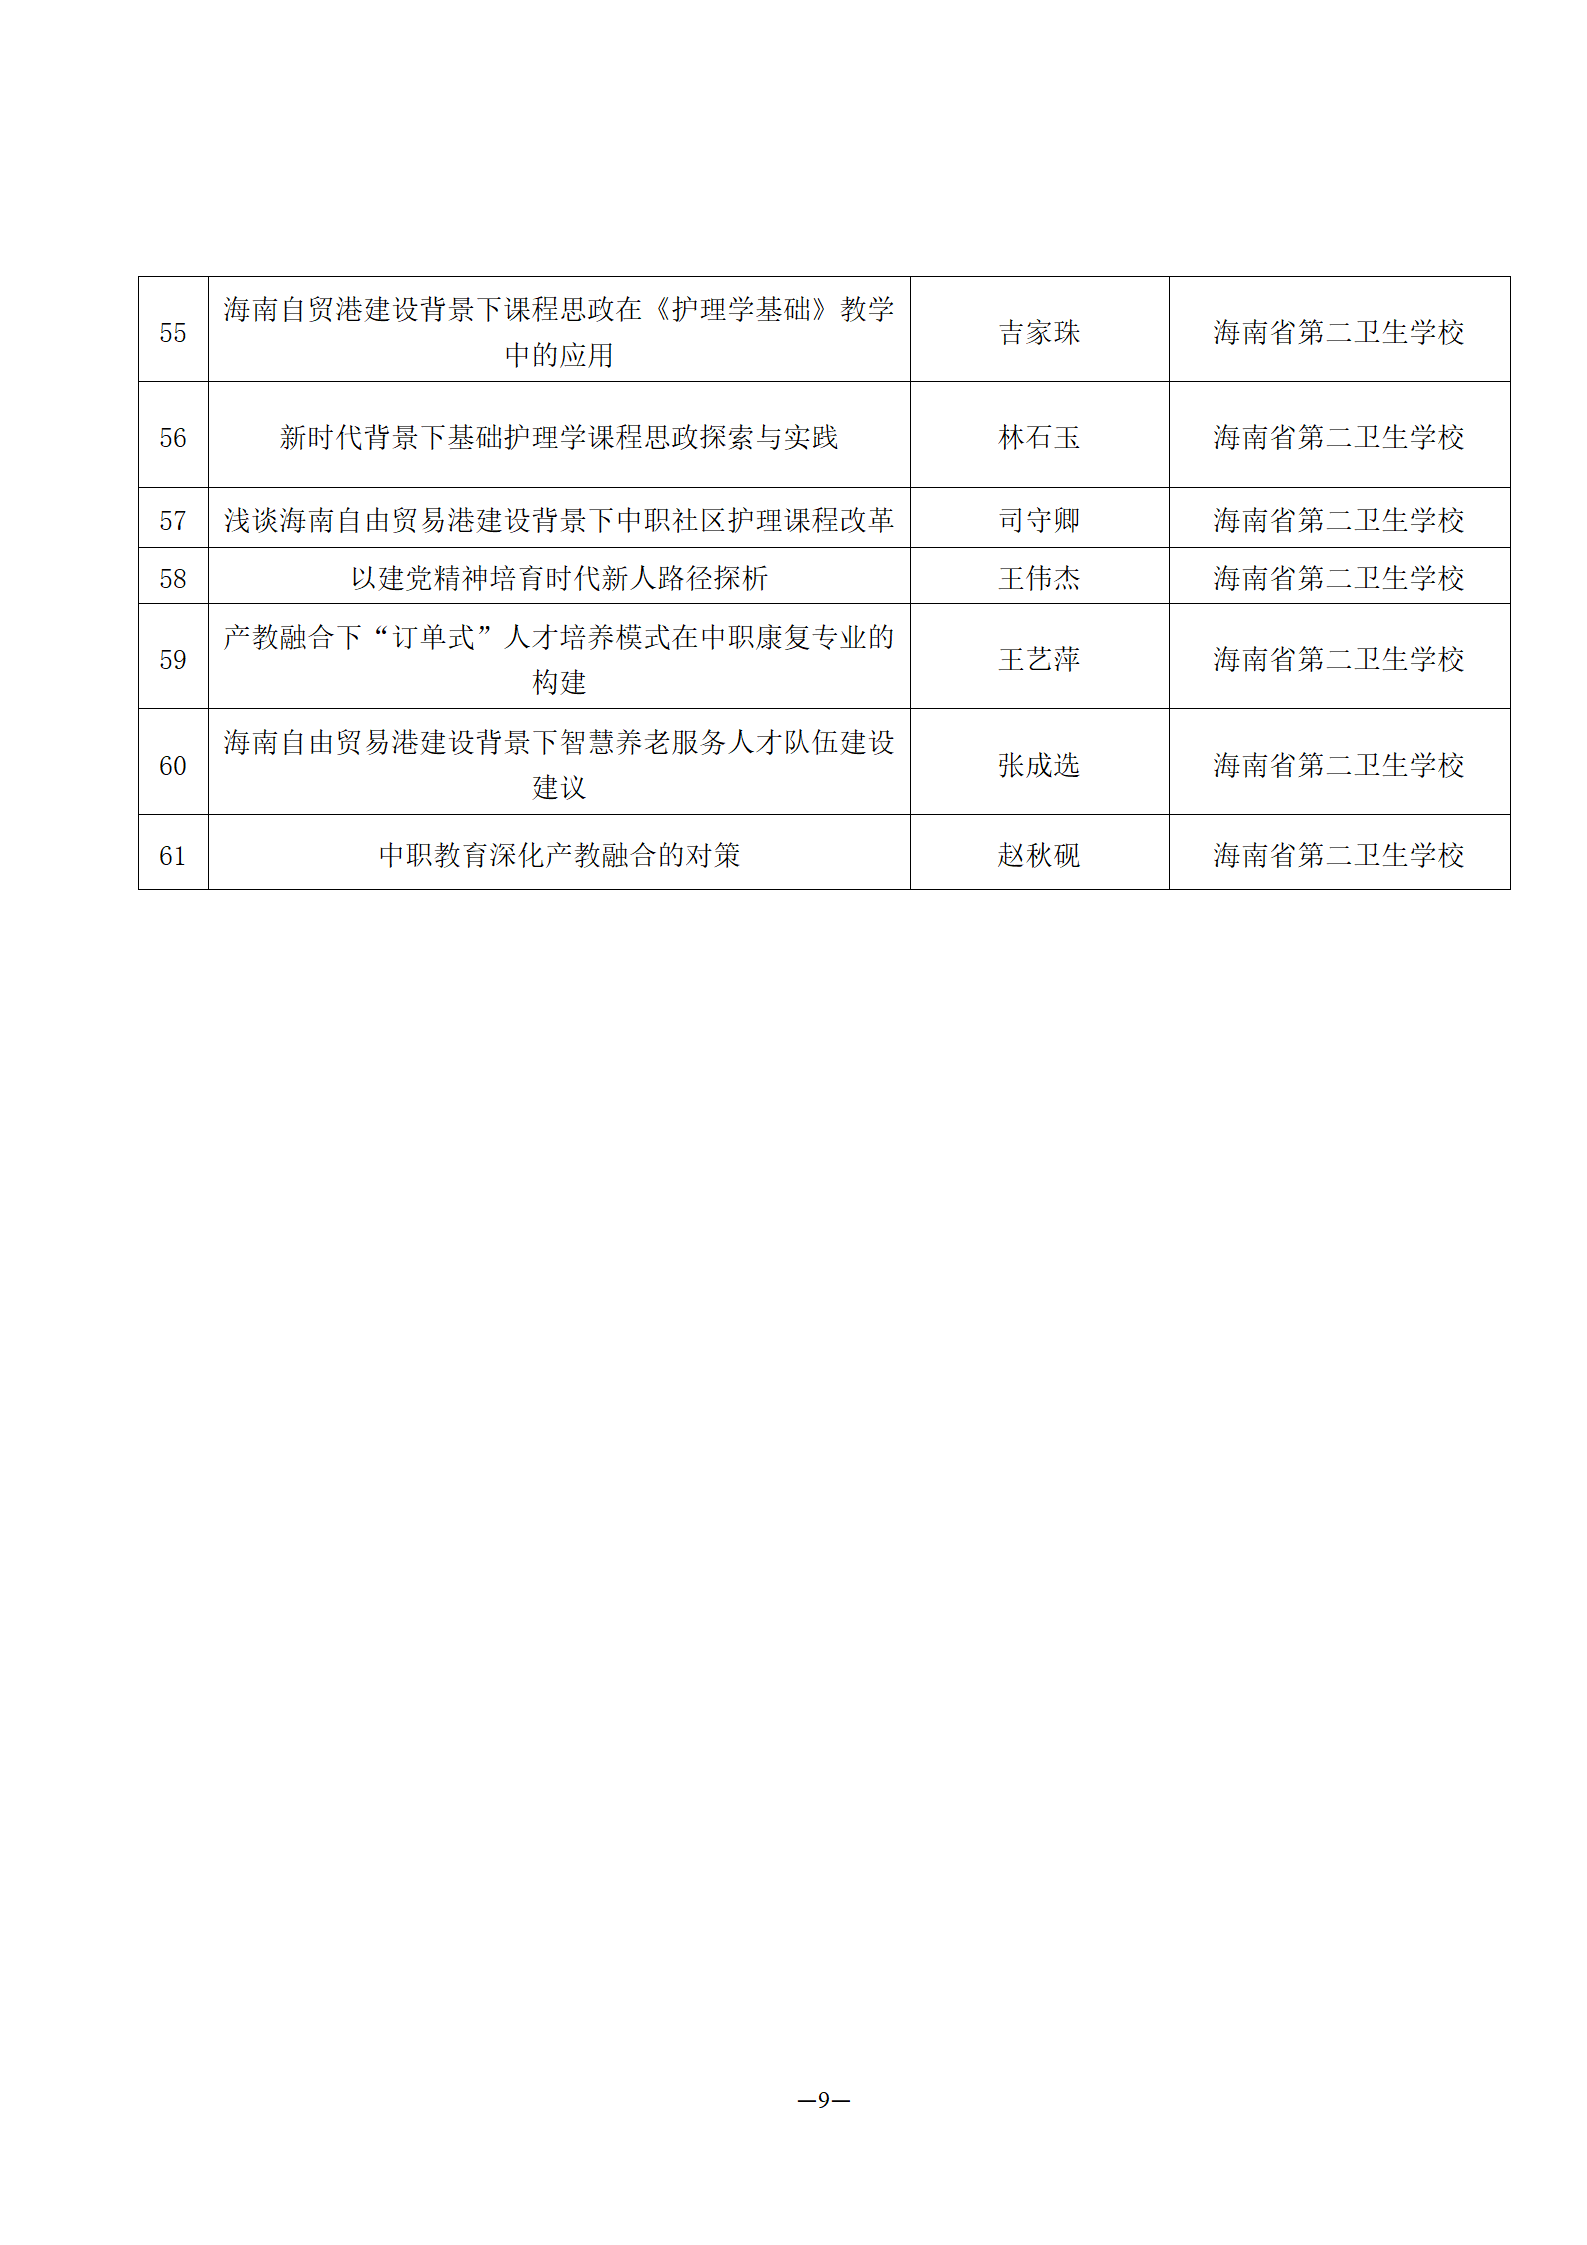 论坛征文评选获奖名单通报(1)_09.png